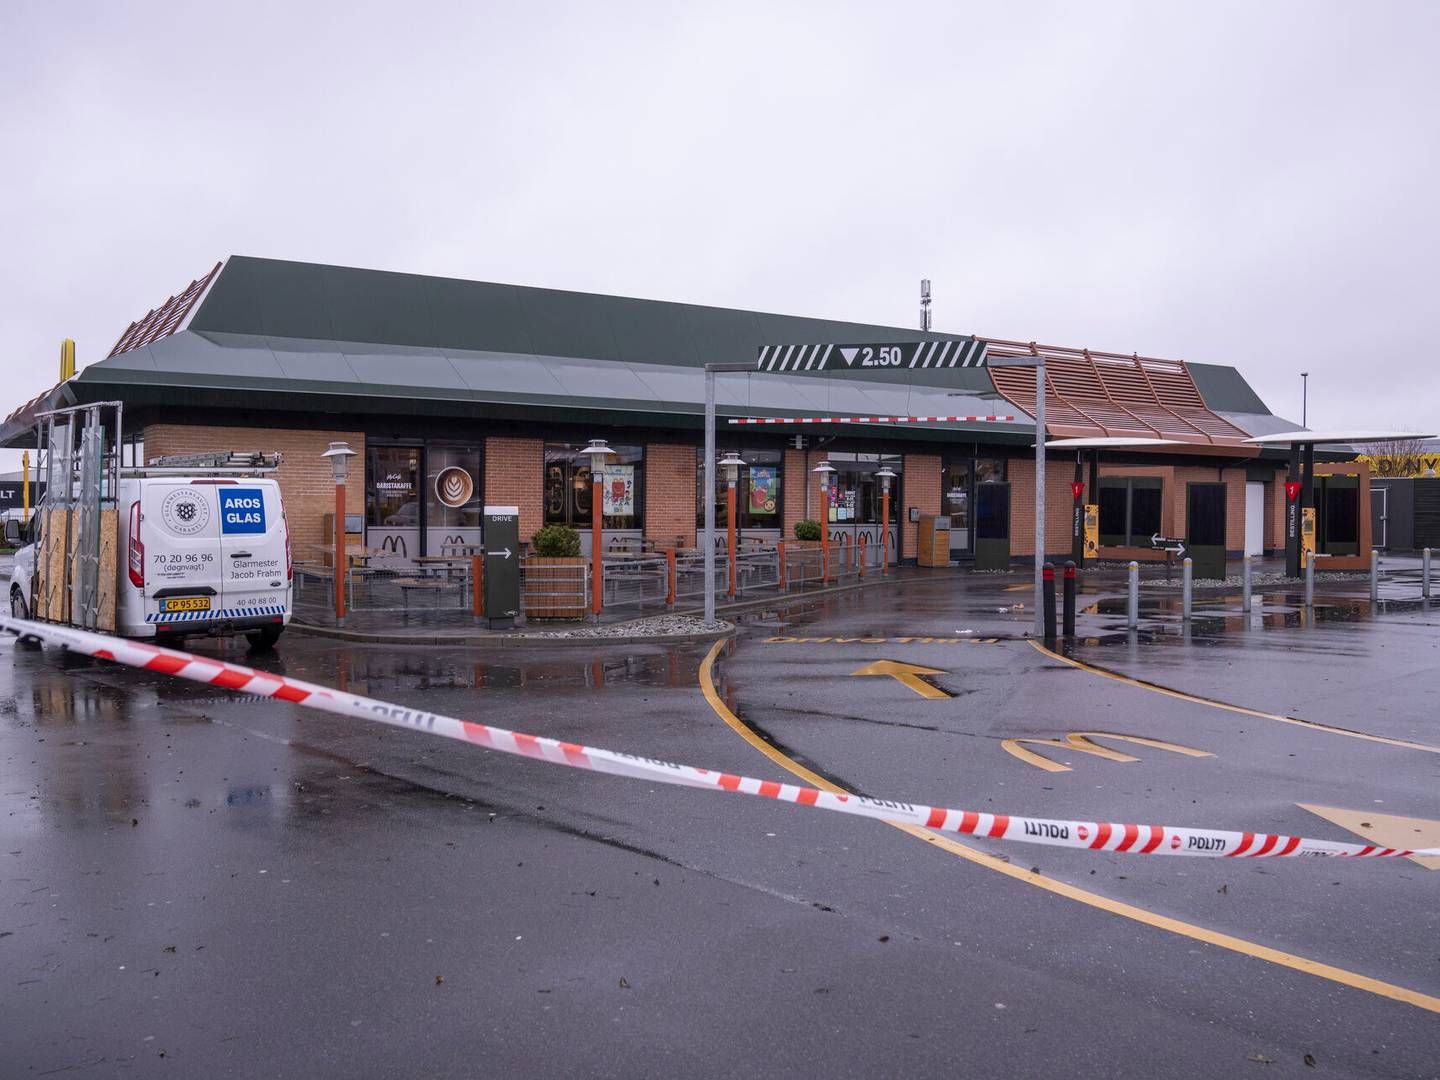 En McDonald's-restaurant i Tilst er ramt af groft hærværk, ifølge politiet, som endnu ikke kan sige, om det er politisk motiveret. | Foto: Bo Amstrup/Ritzau Scanpix